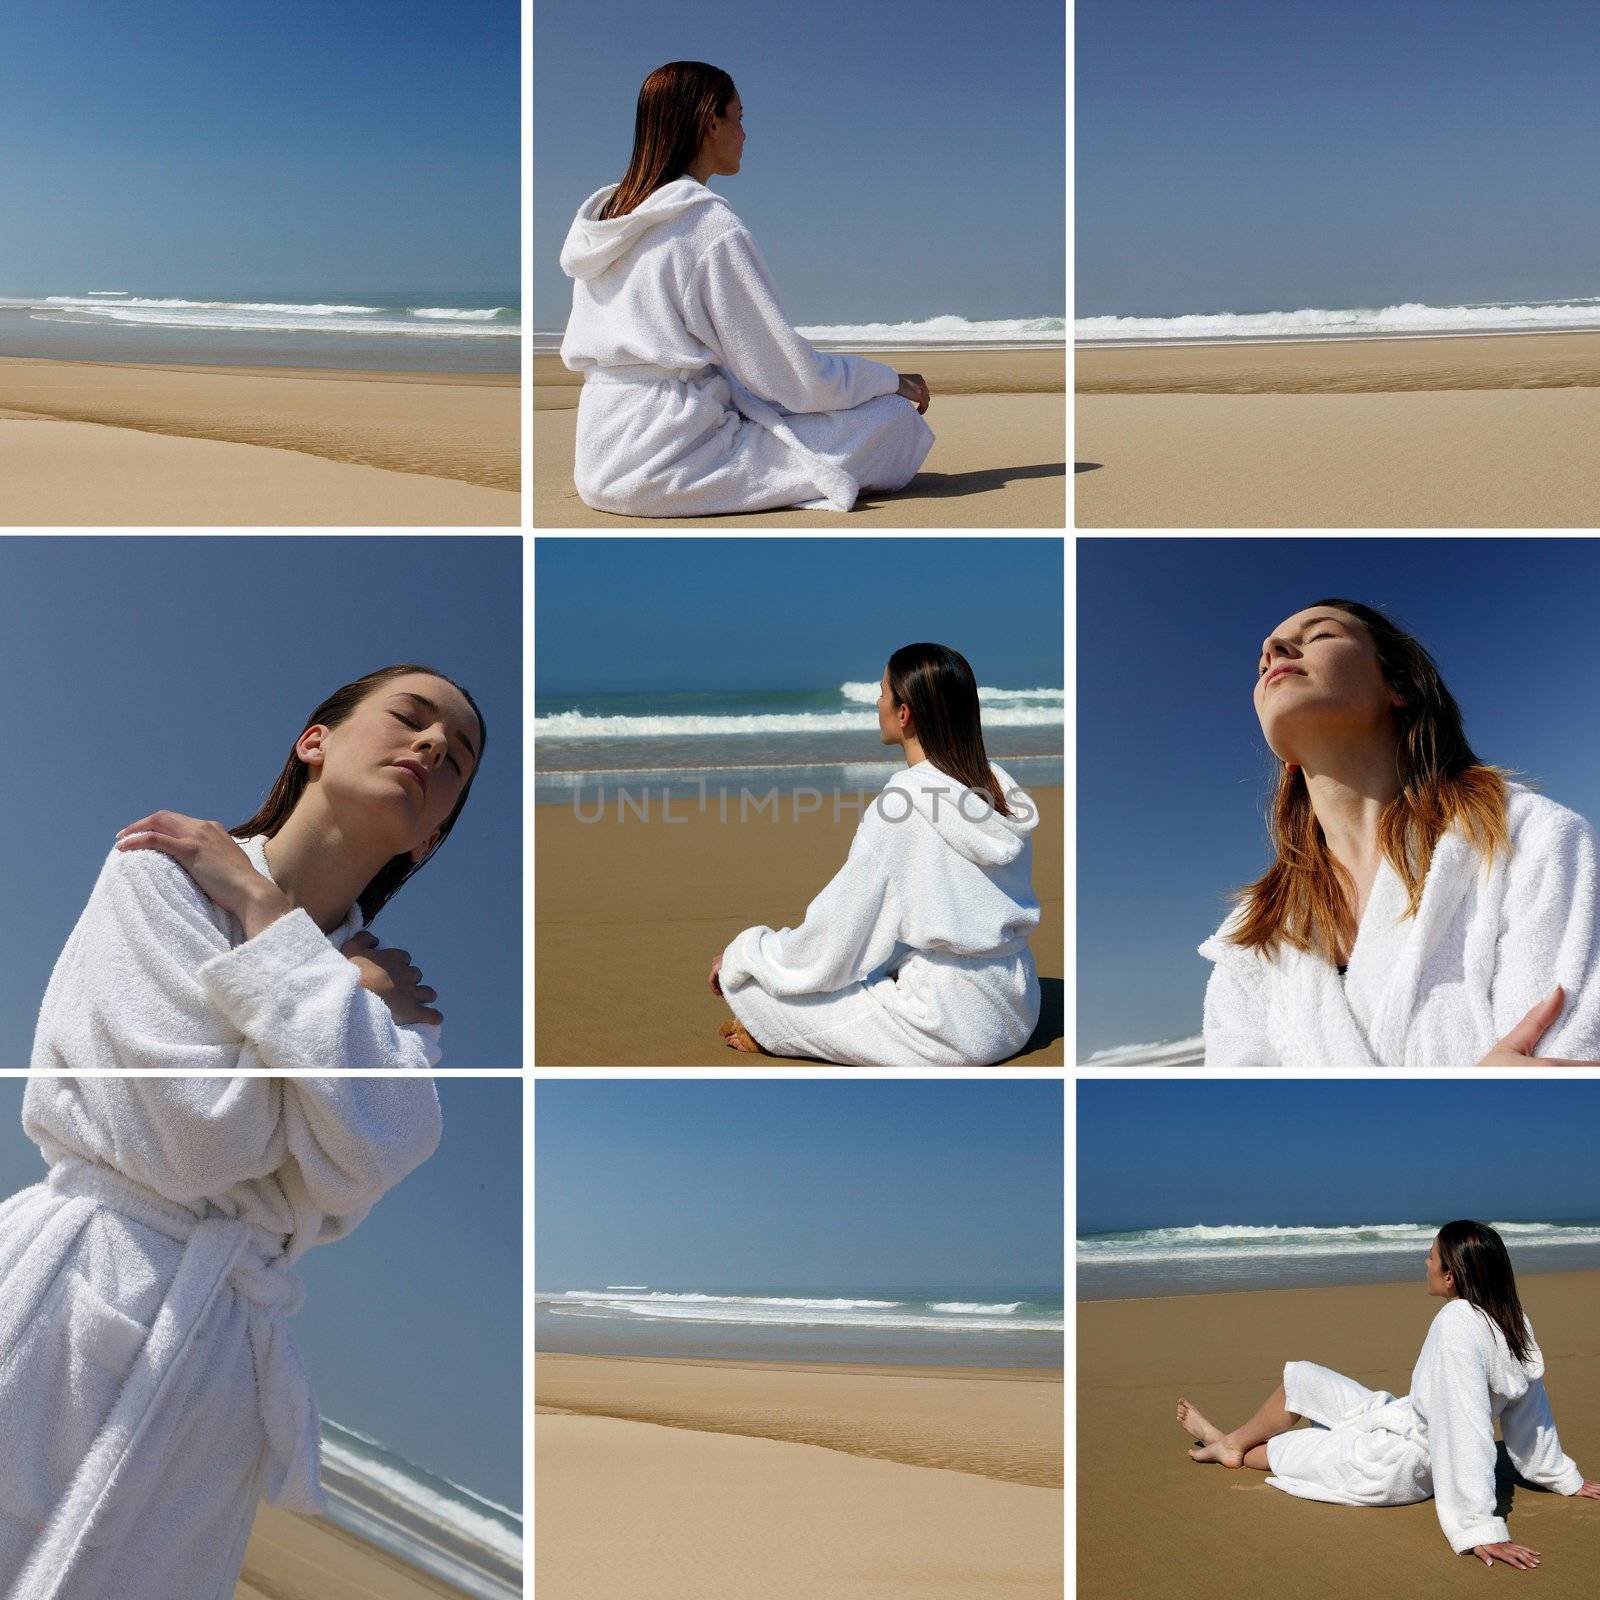 a woman in bathrobe on the beach by phovoir